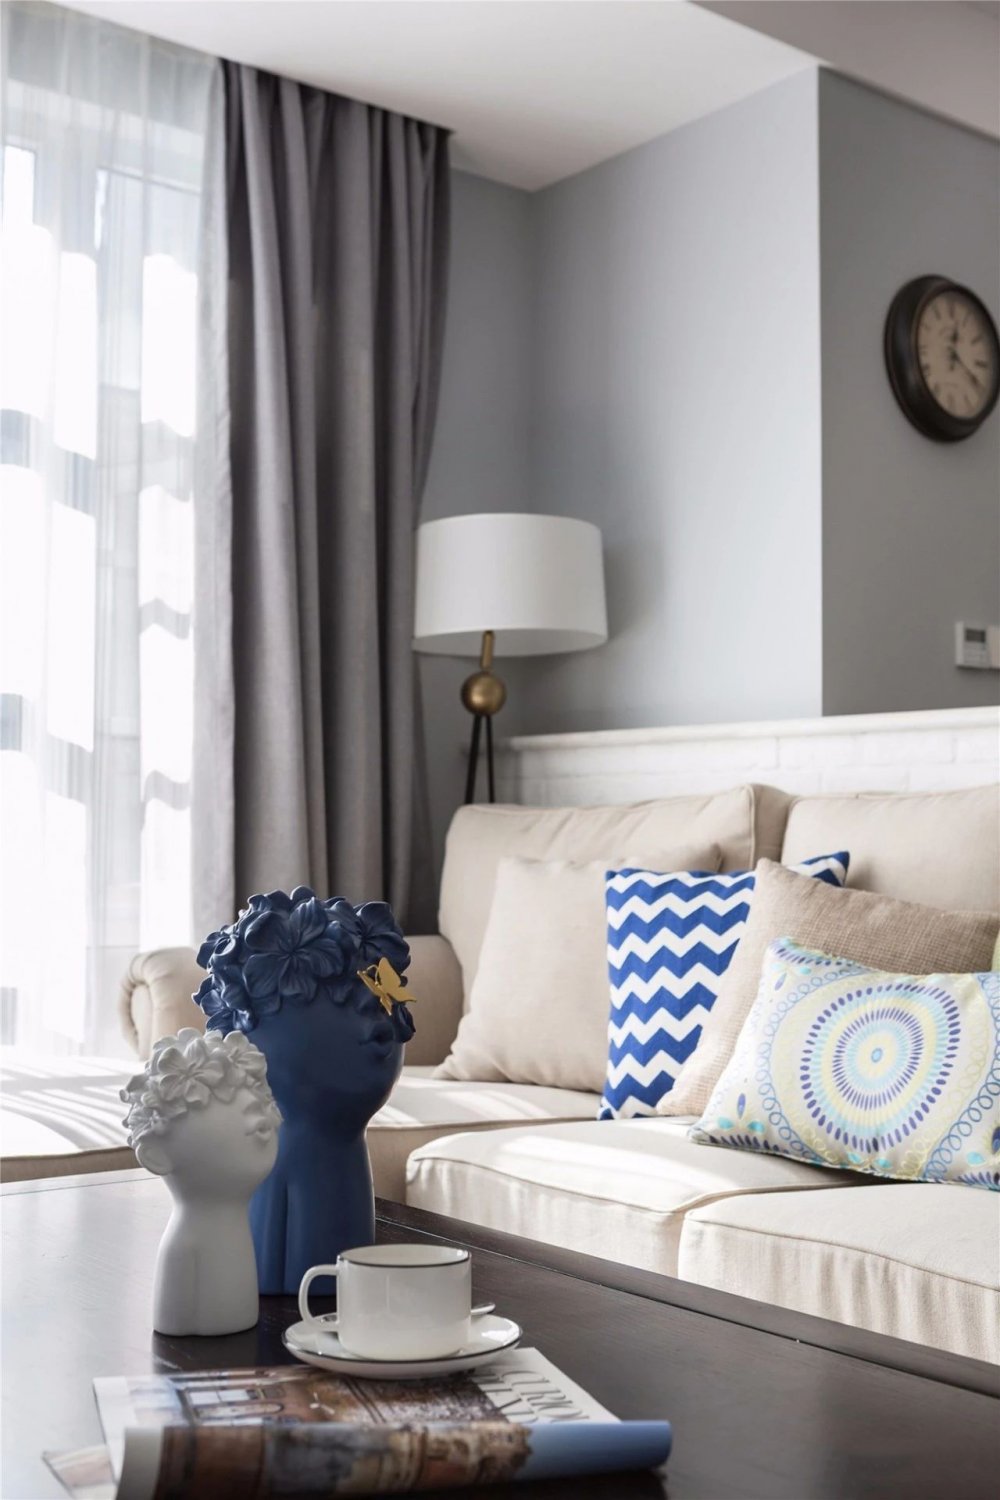 米色沙发搭配灰色窗帘,蓝白抱枕与艺术摆件,增添空间活力